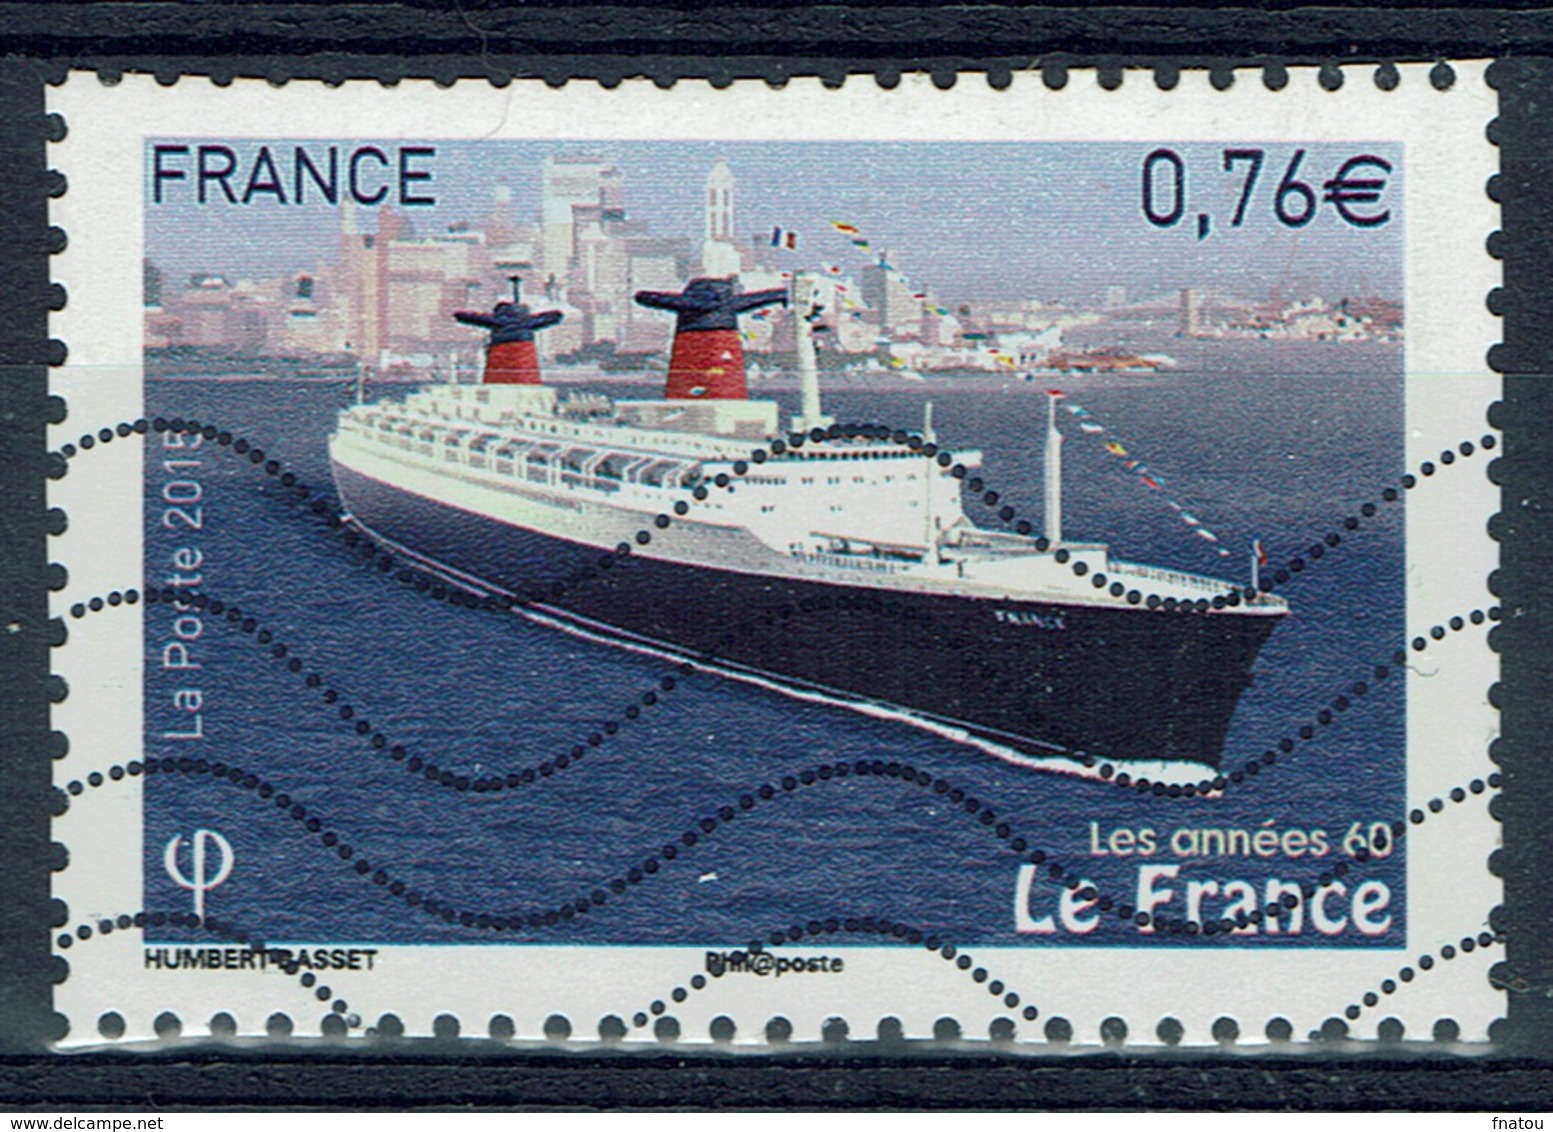 France, SS France, Ocean Liner 2015, VFU - Used Stamps